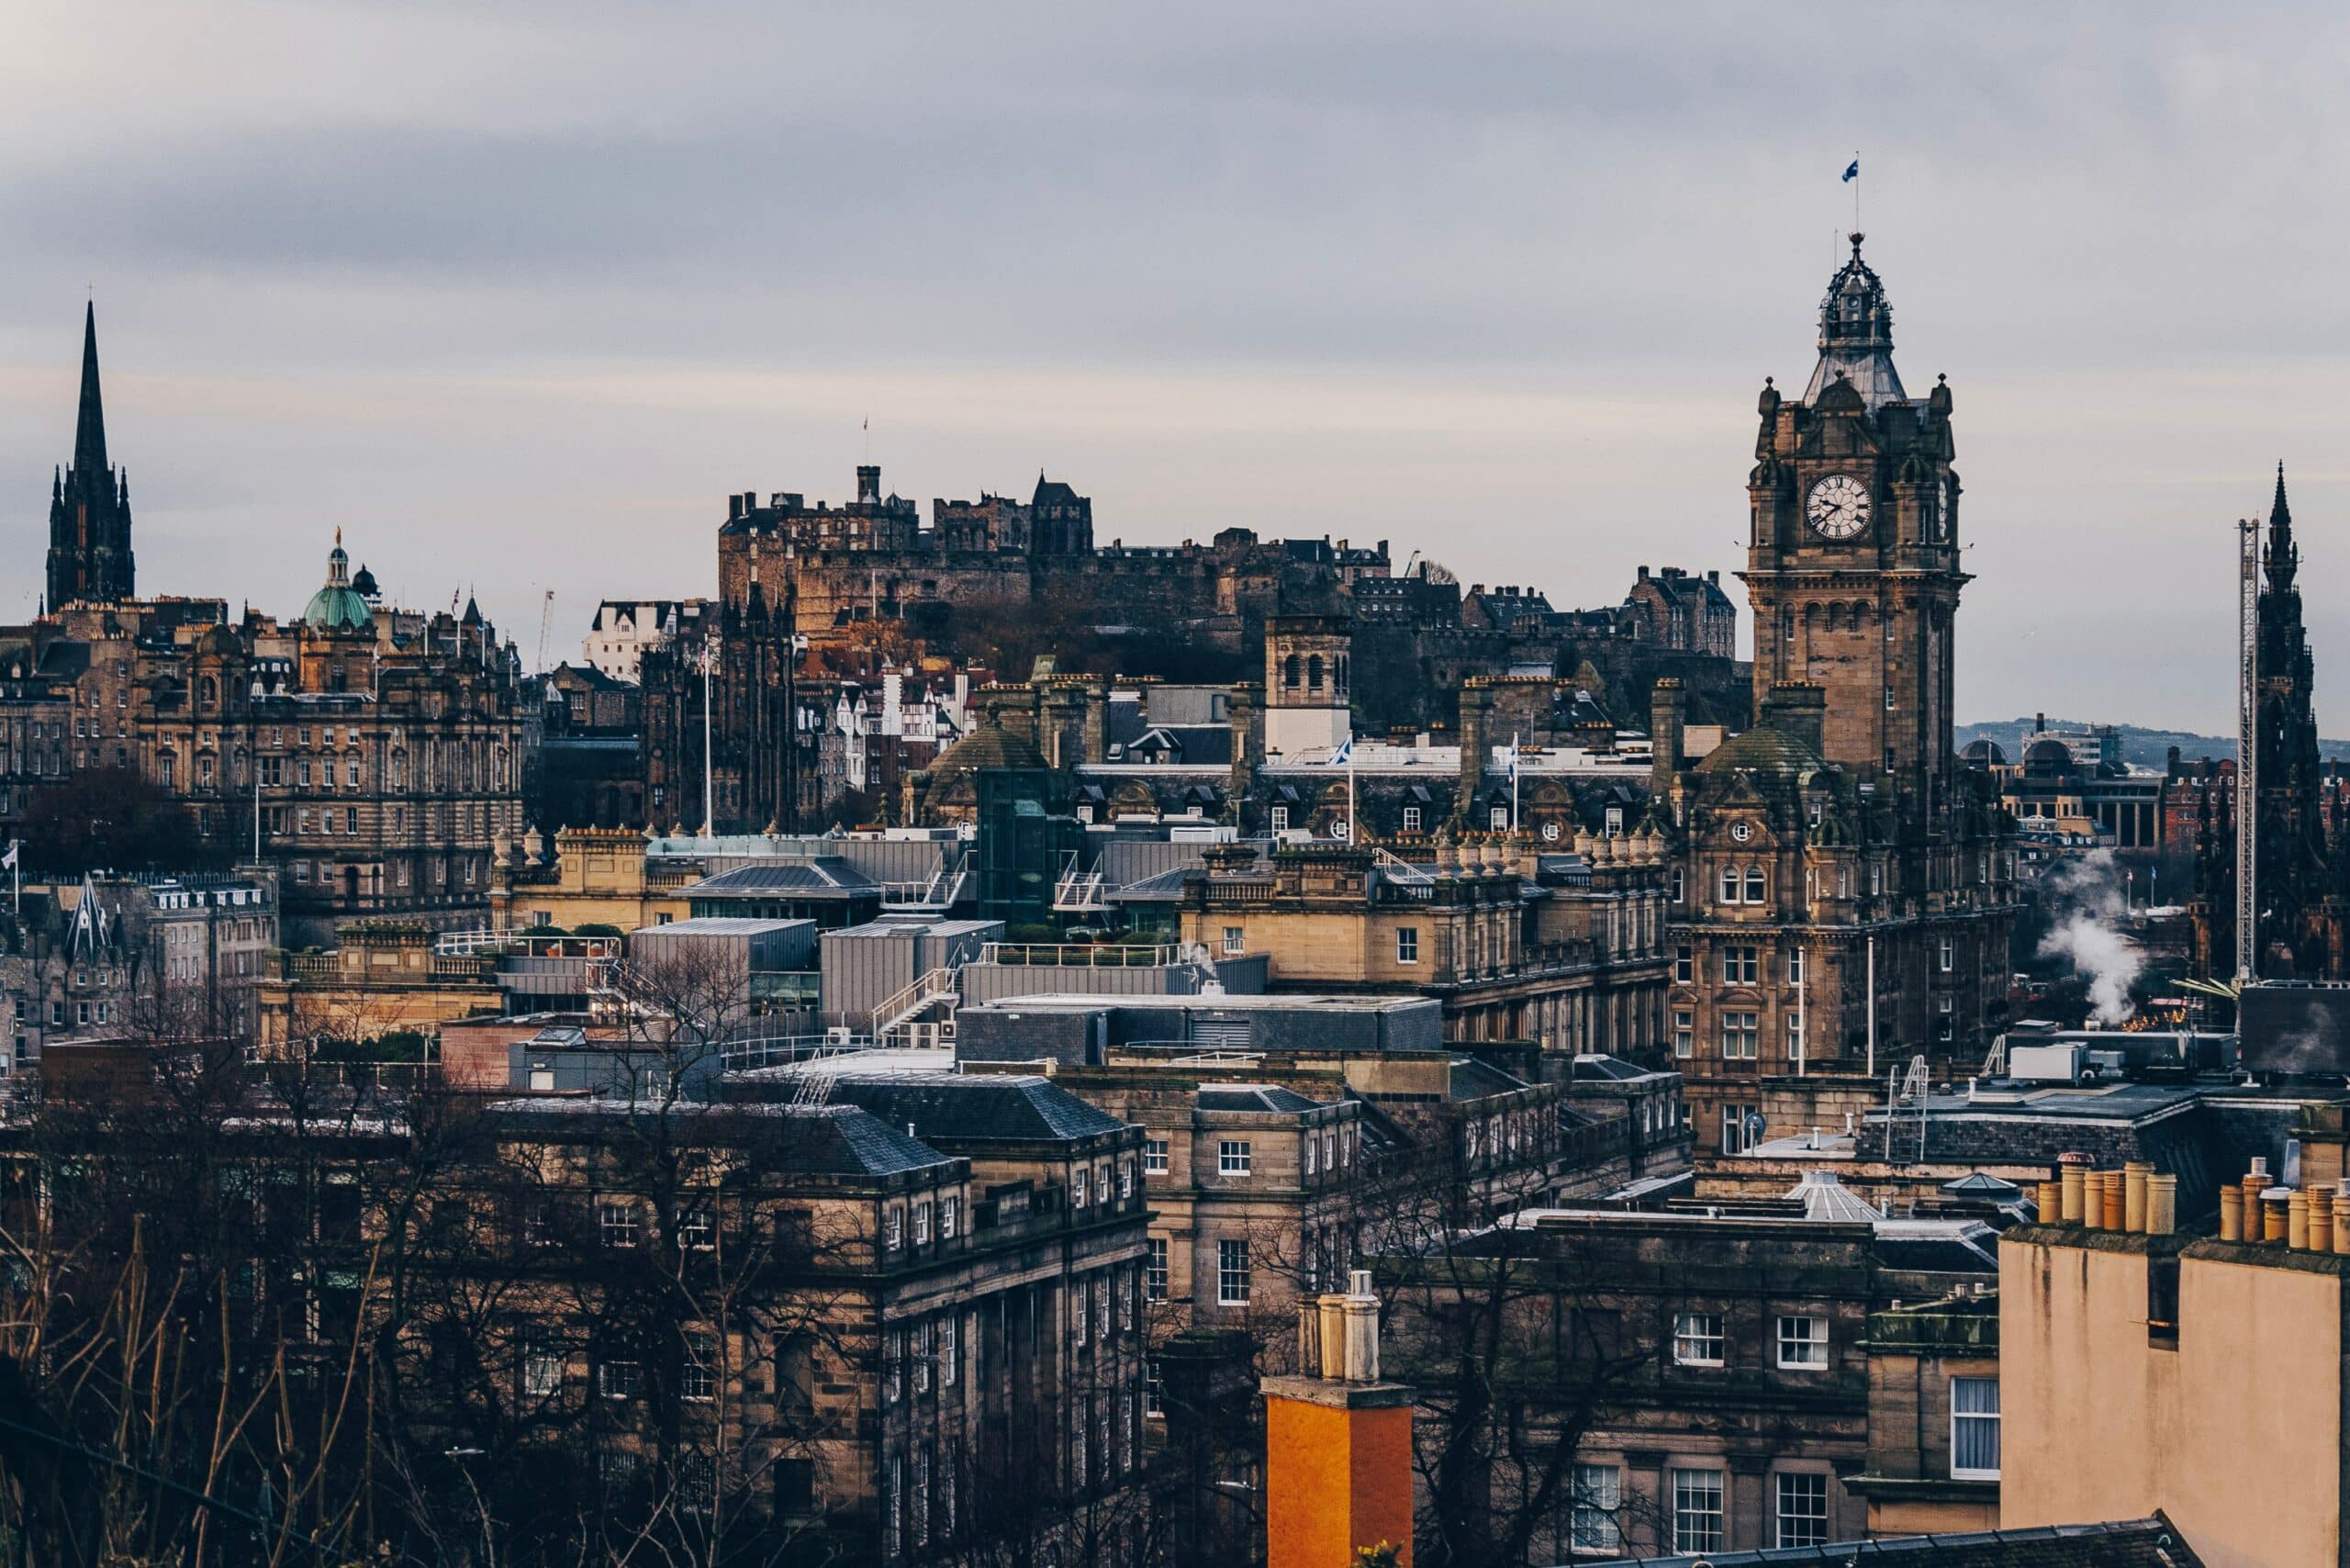 vista da cidade de Edimburgo, para representar o chip de celular Escócia. A paisagem é composta por vários prédios antigos de pedra, todos nos tons bege e marrom.